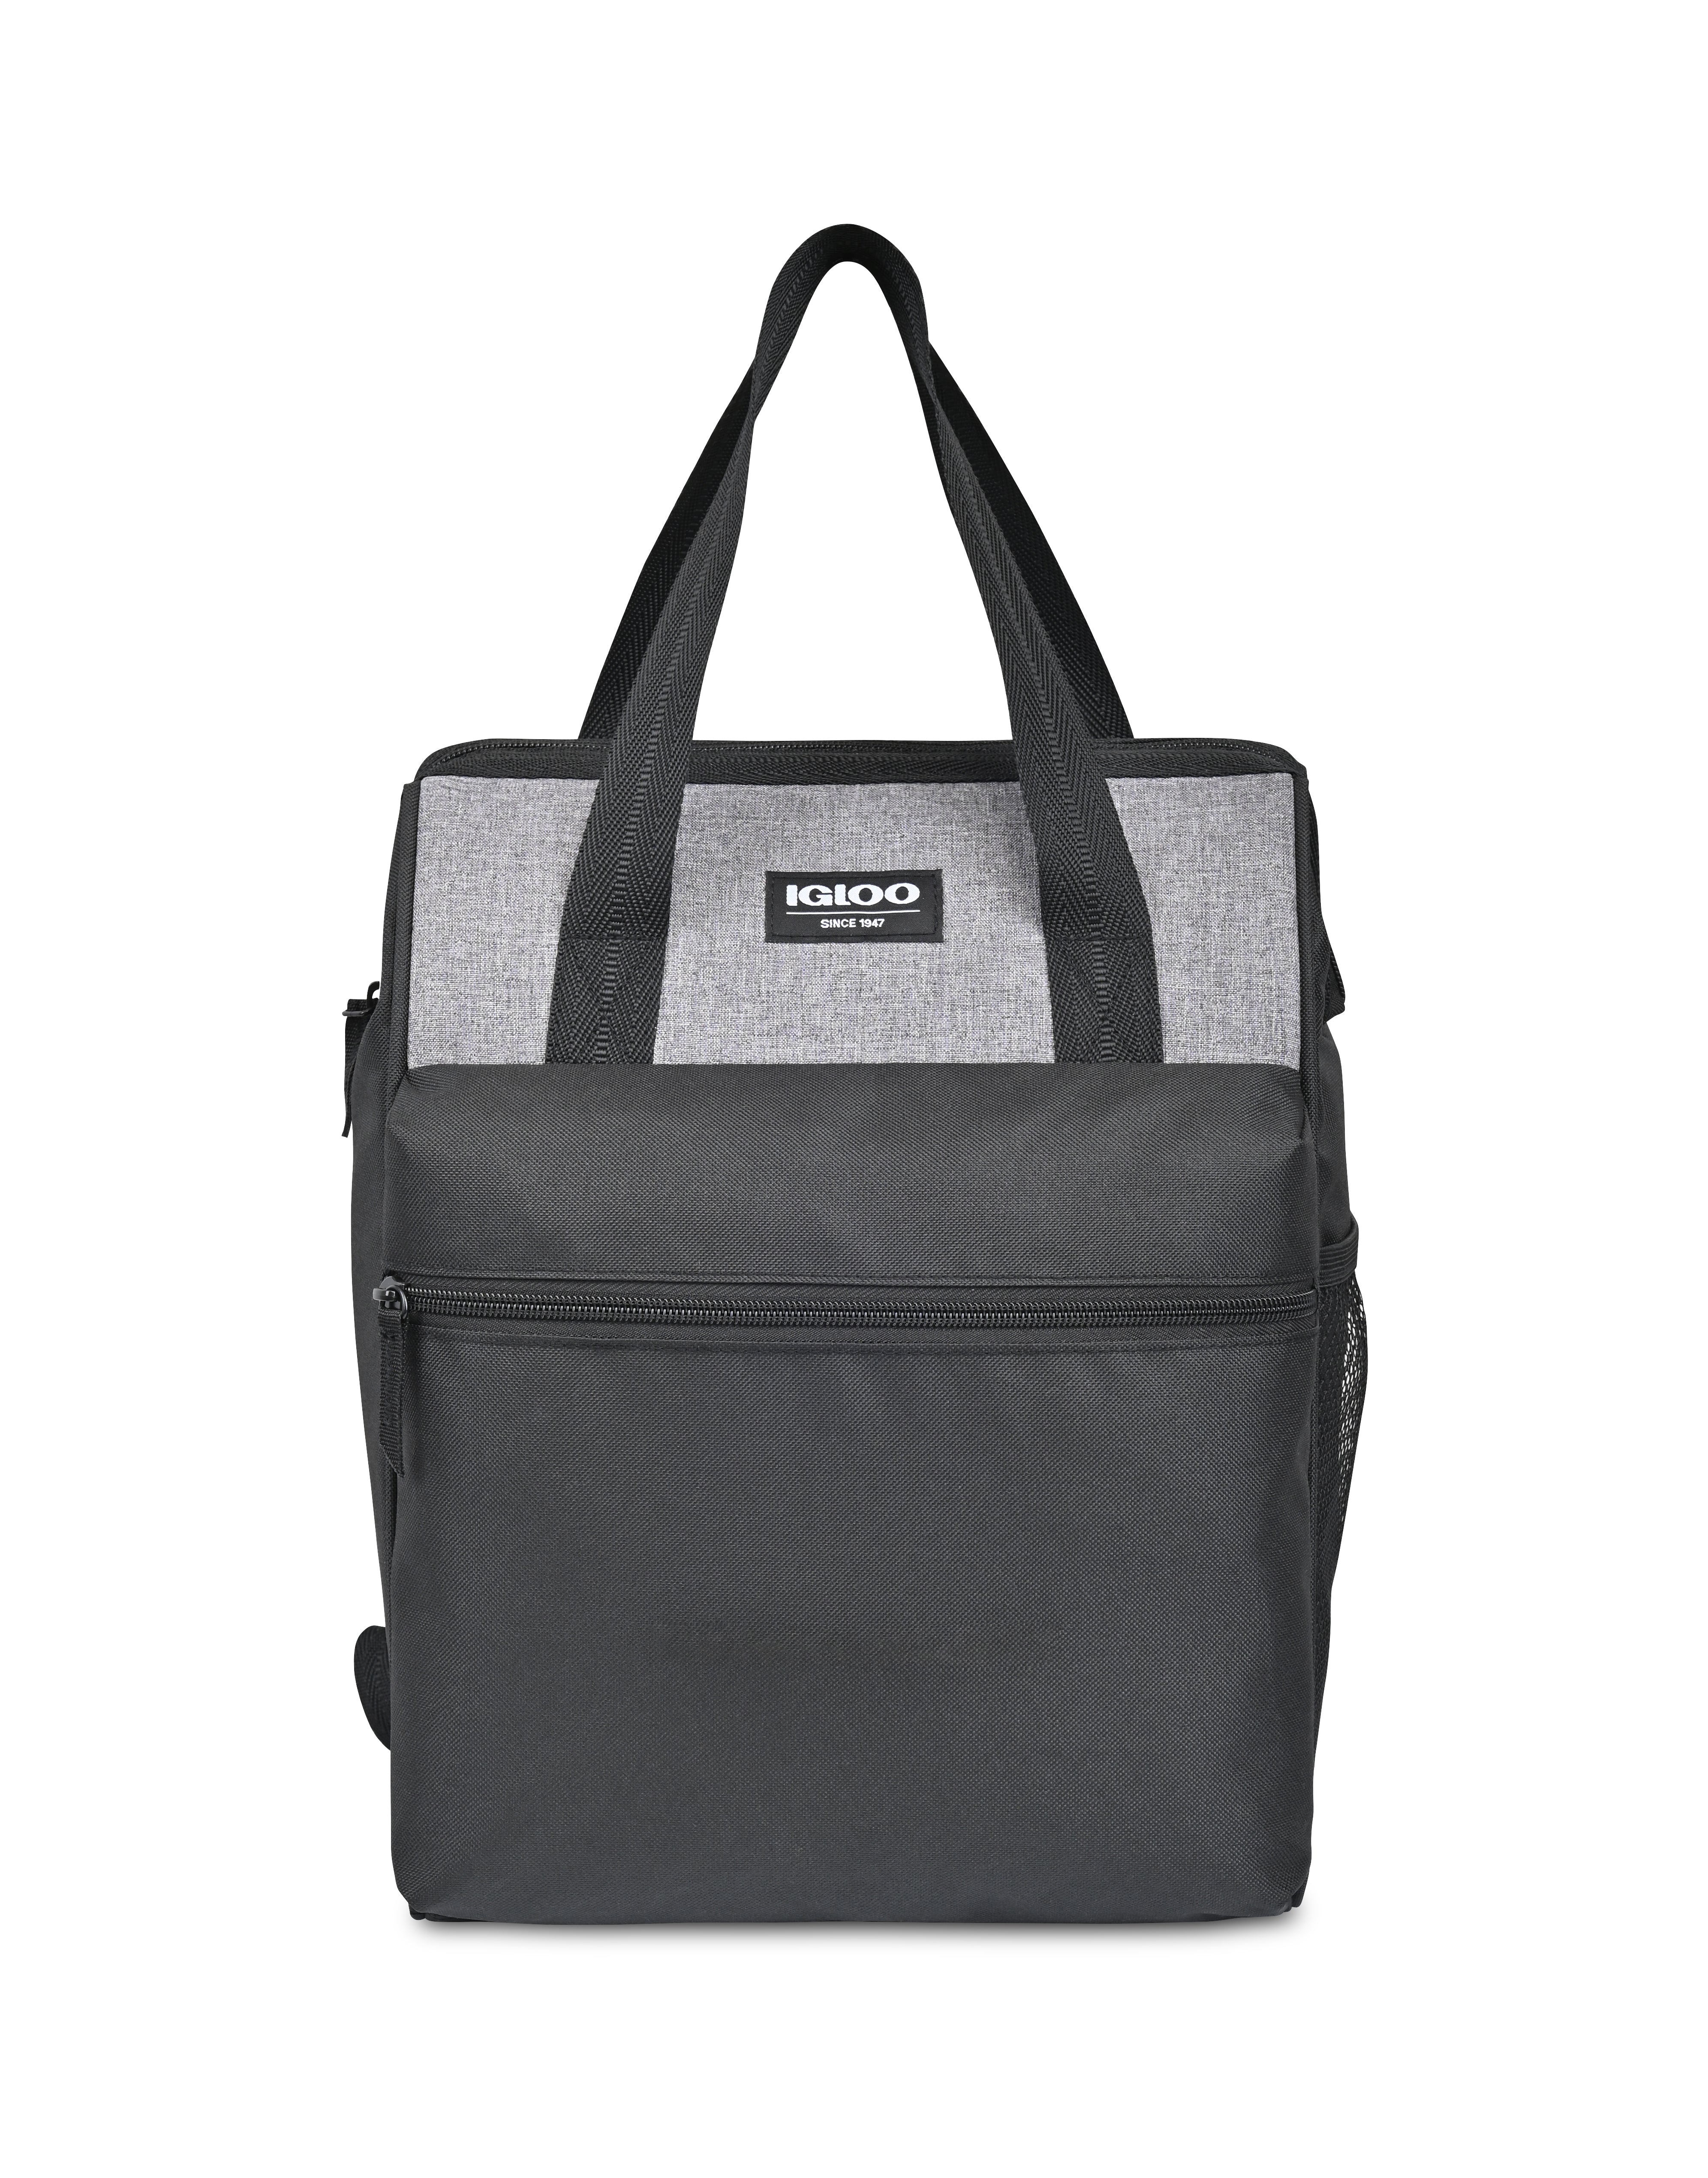 Igloo® Leftover Essentials Backpack Cooler